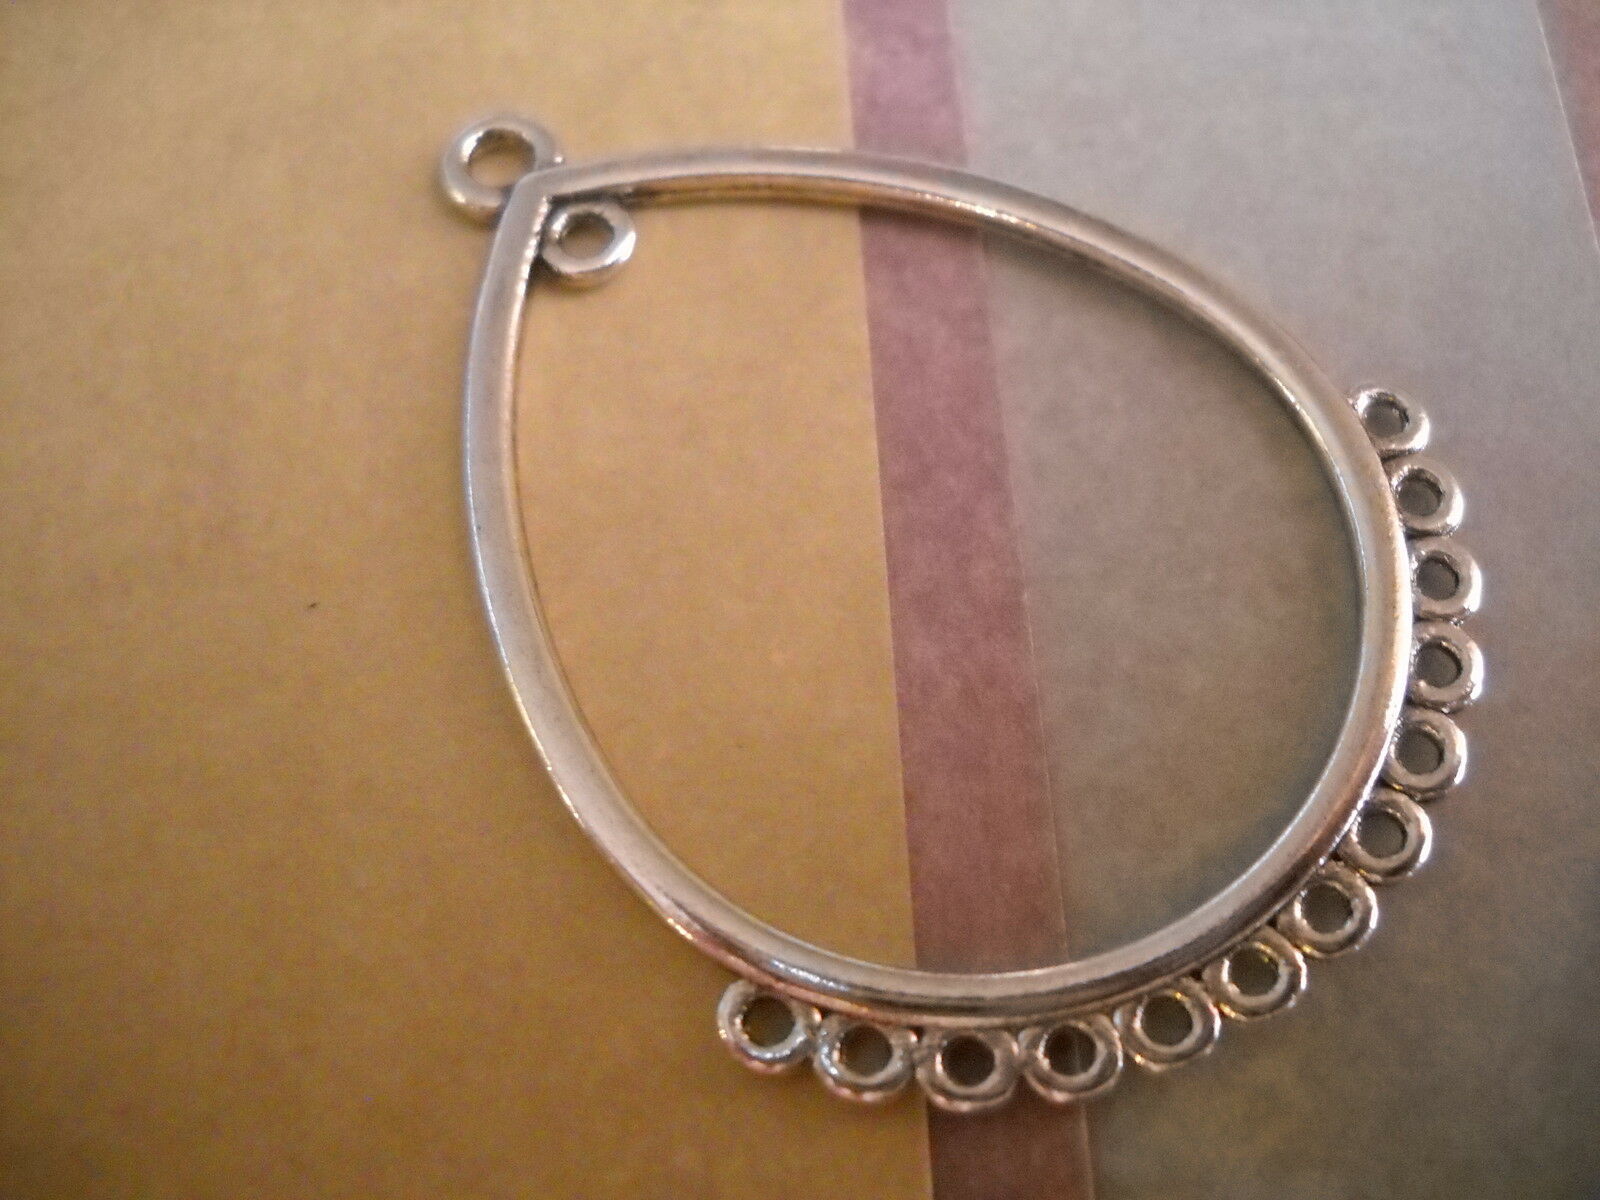 The Slippery Pearl - 10 chandelier earring findings antiqued silver drop pendants eardrop connectors